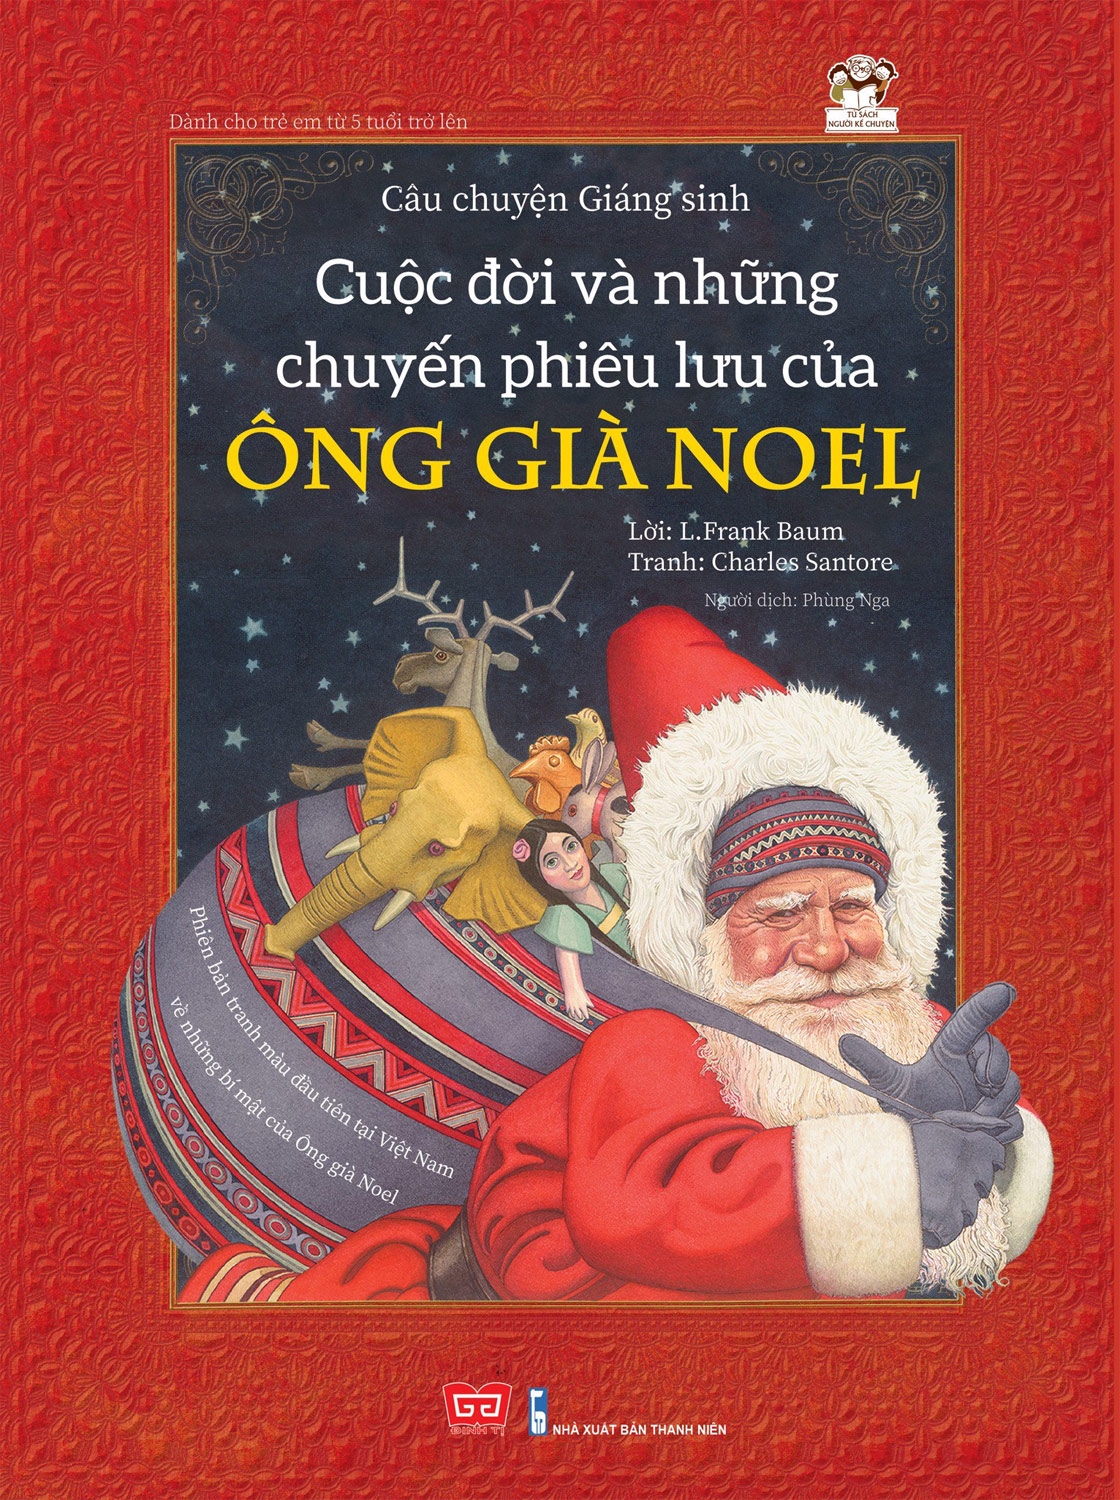 Cuộc đời và những chuyến phiêu lưu của Ông Già Noel, book cover